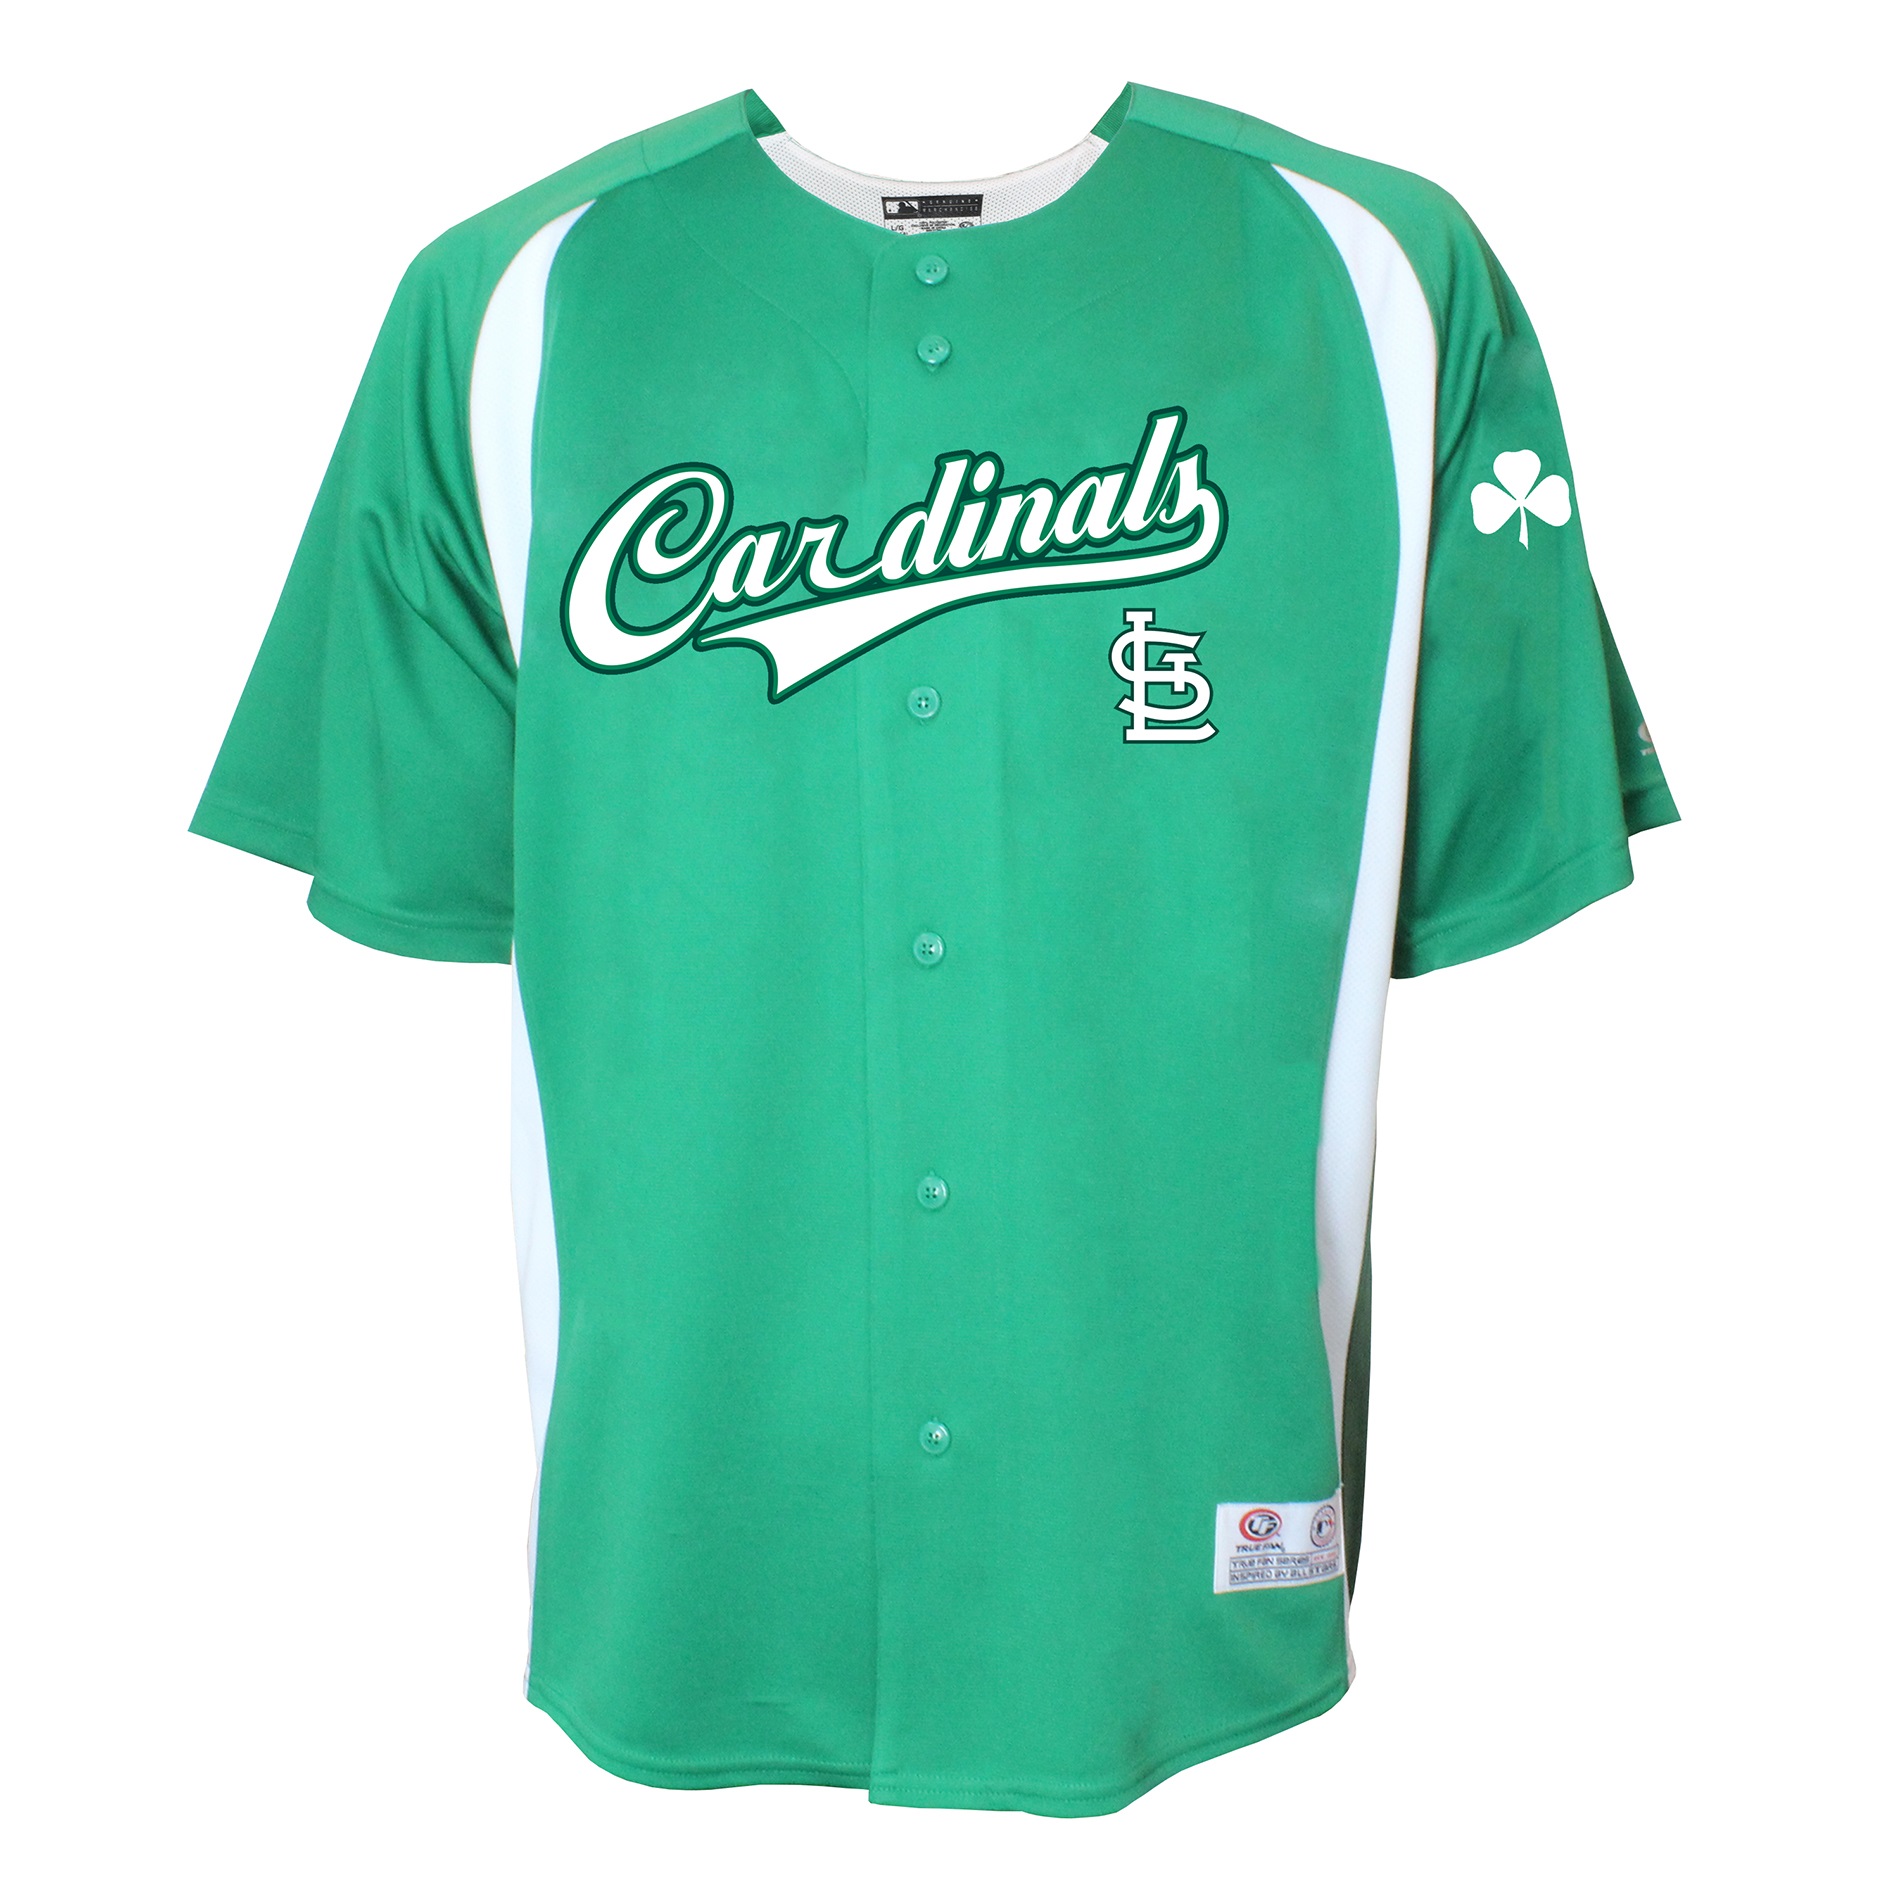 St. Louis Cardinals Green Jersey